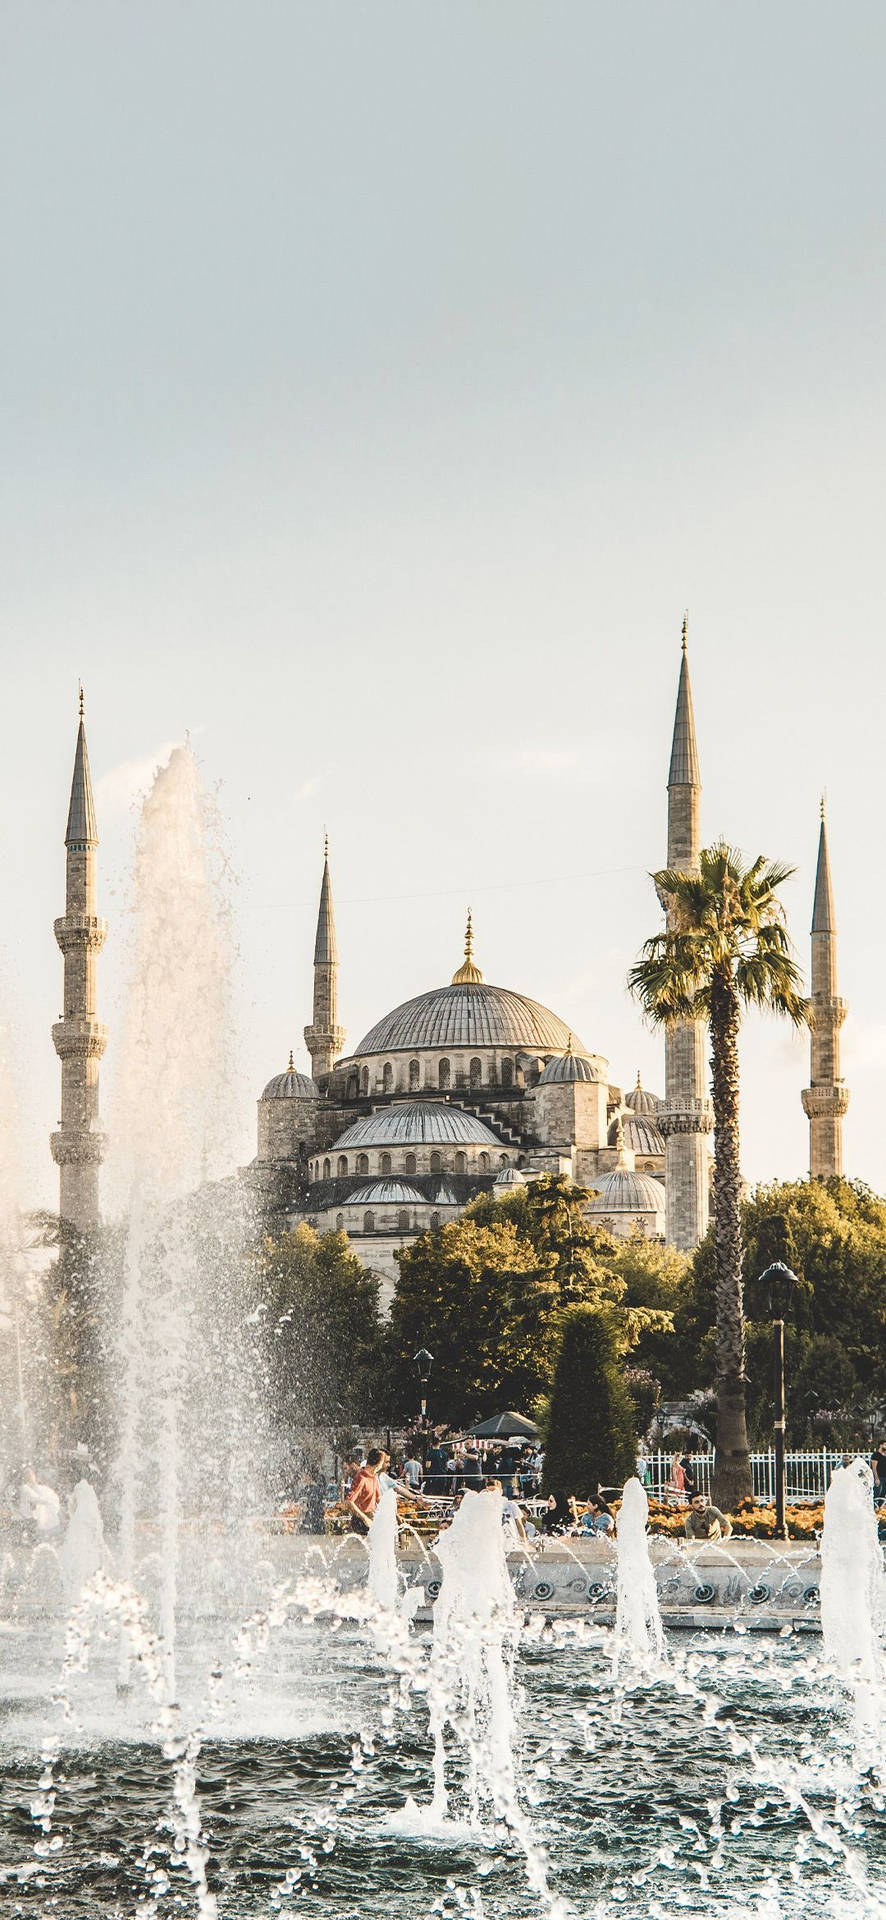 Hagia Sophia Fountains Picture